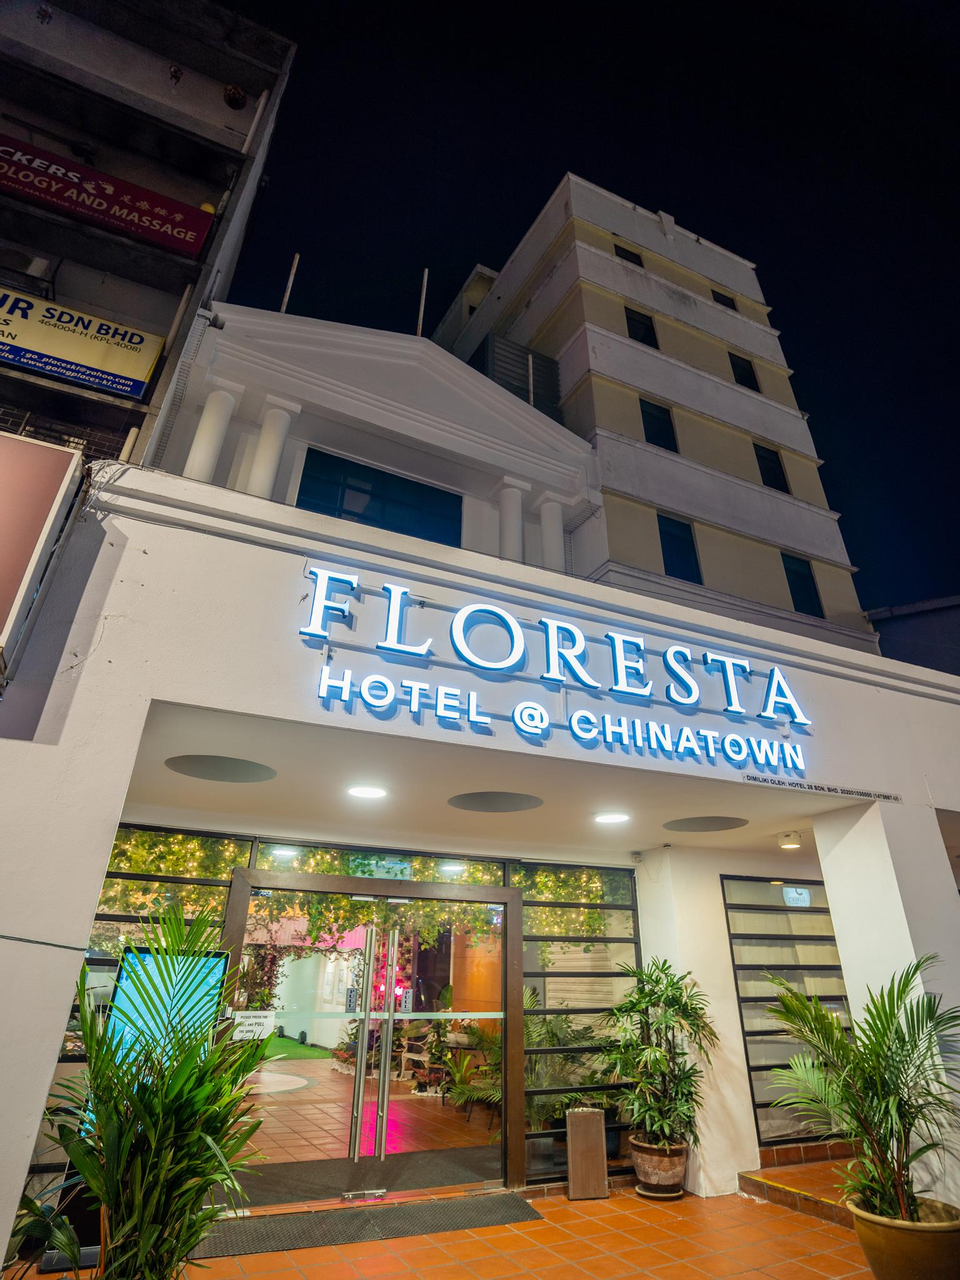 Floresta Hotel @ China Town, Kuala Lumpur